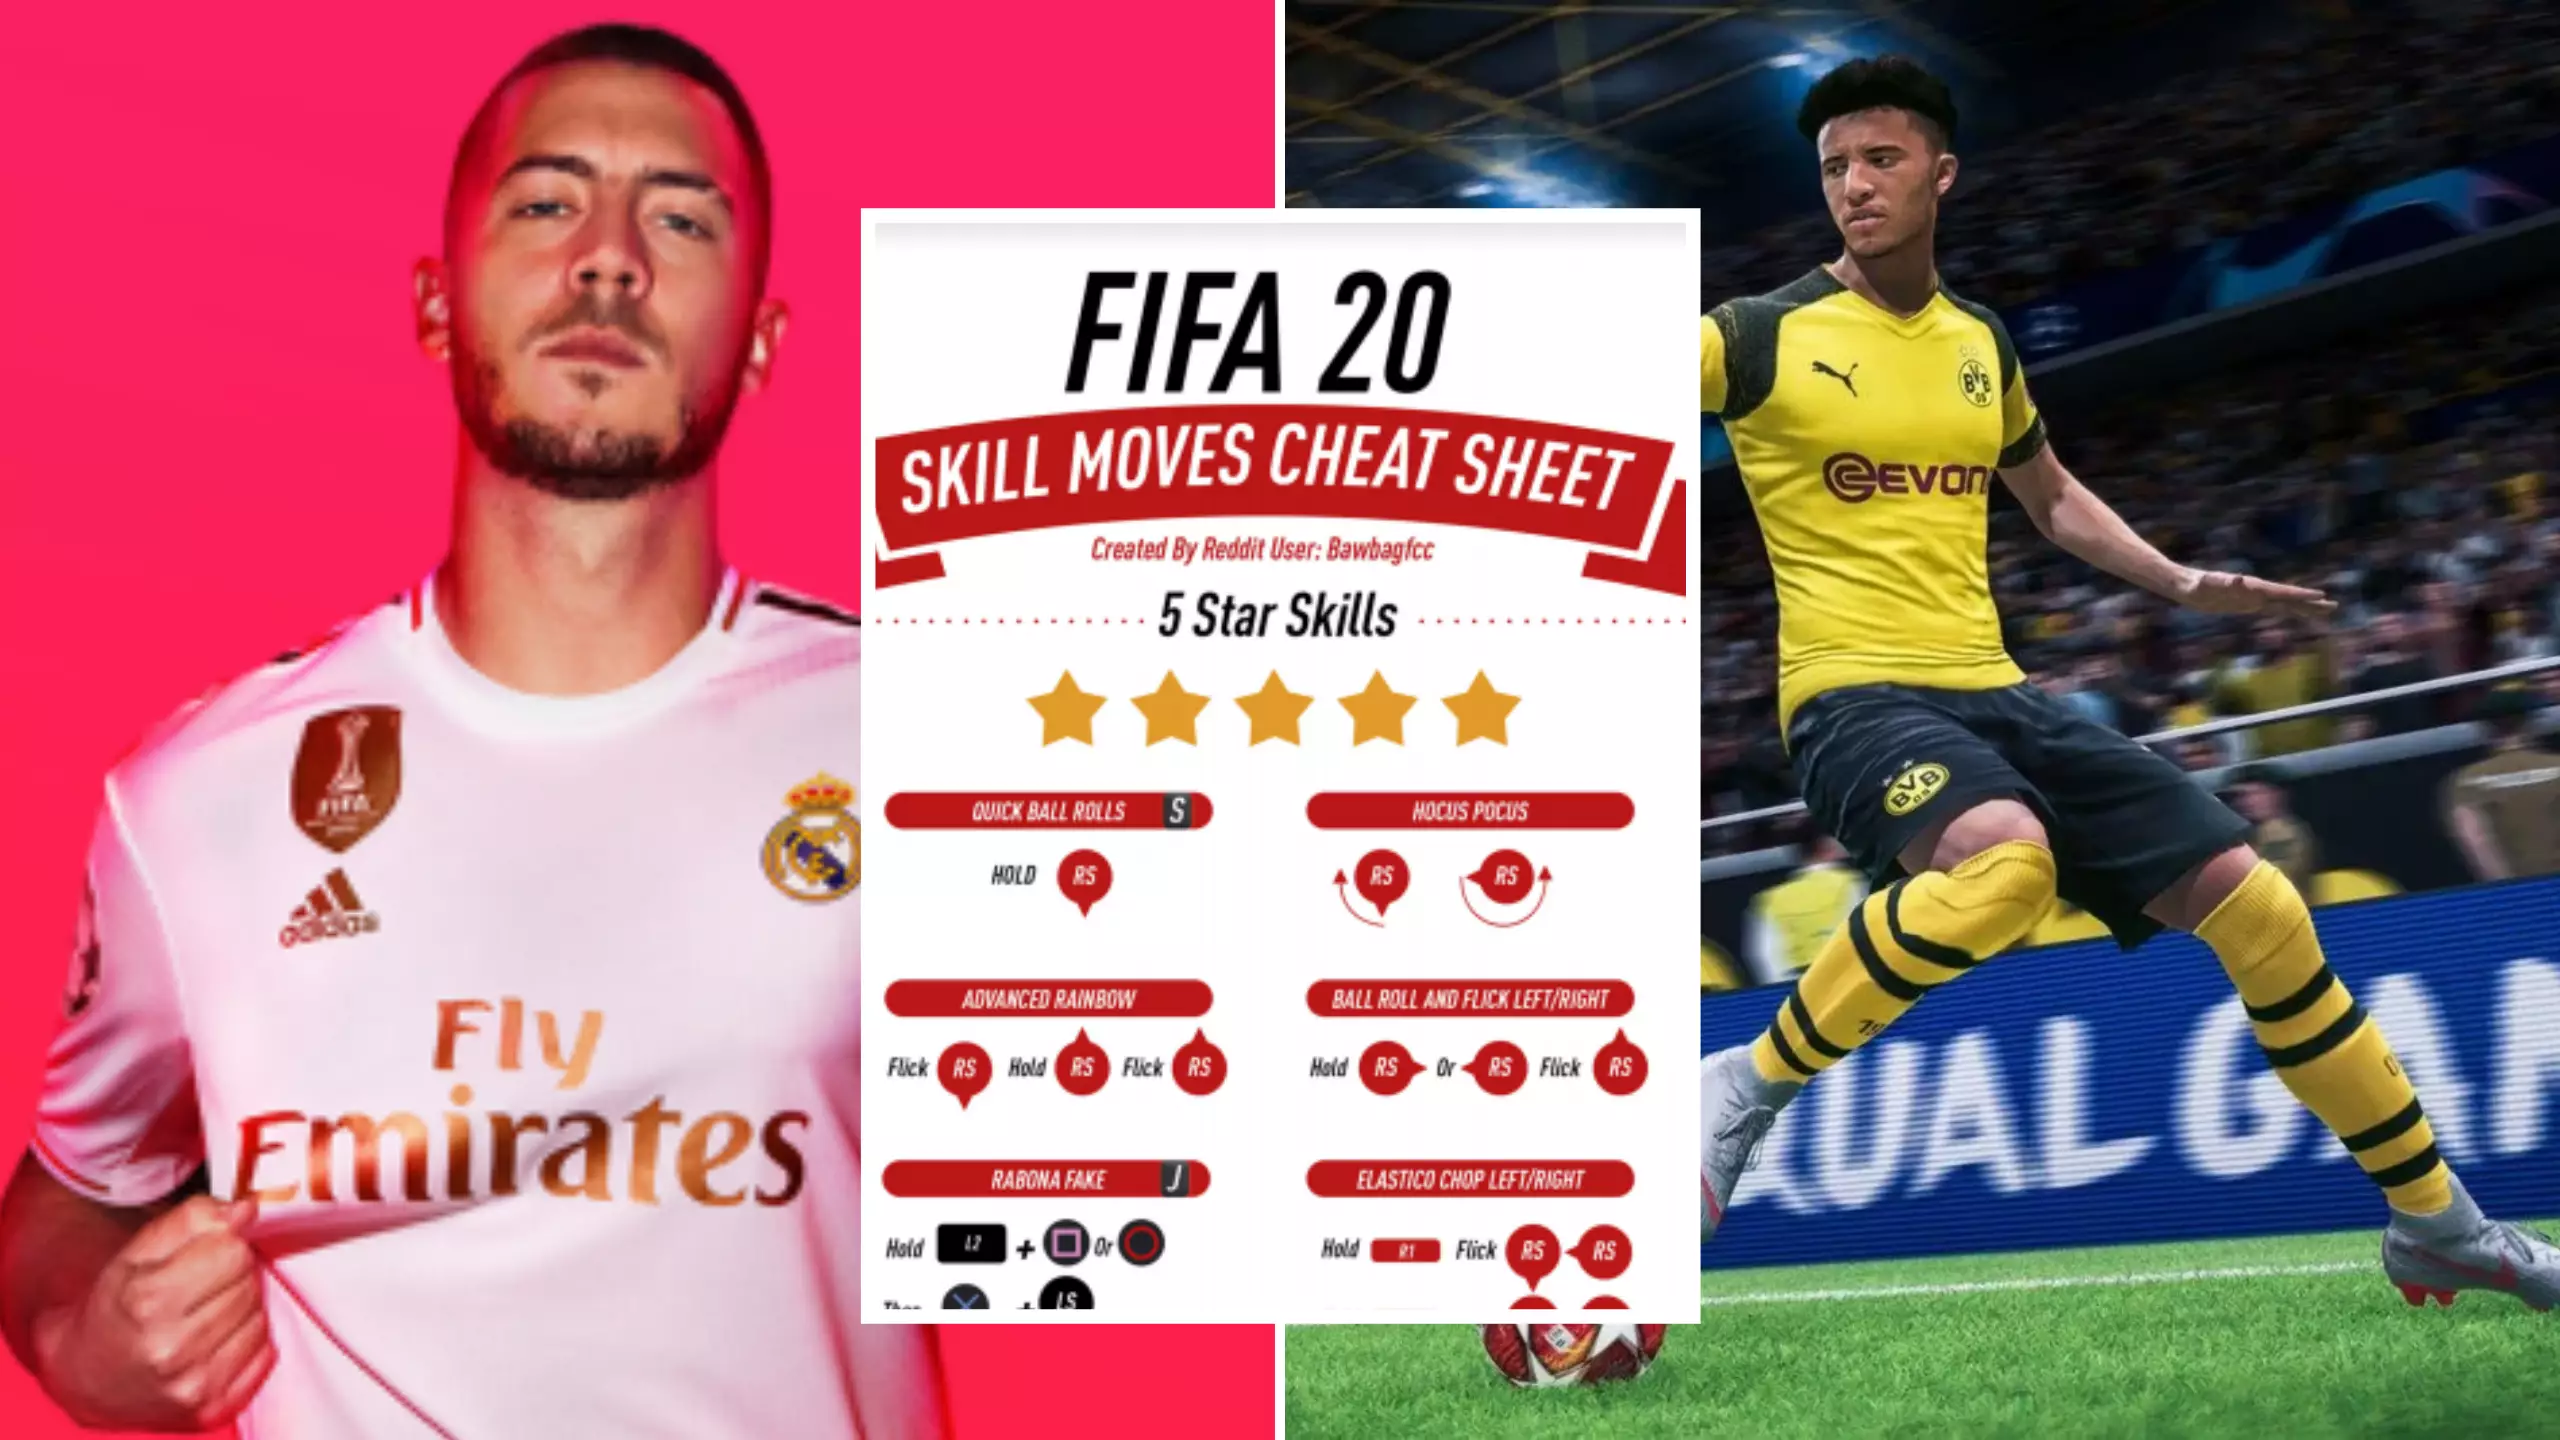 FIFA 20 Visual Cheat Sheets Will Help Anyone Master Five-Star Skills